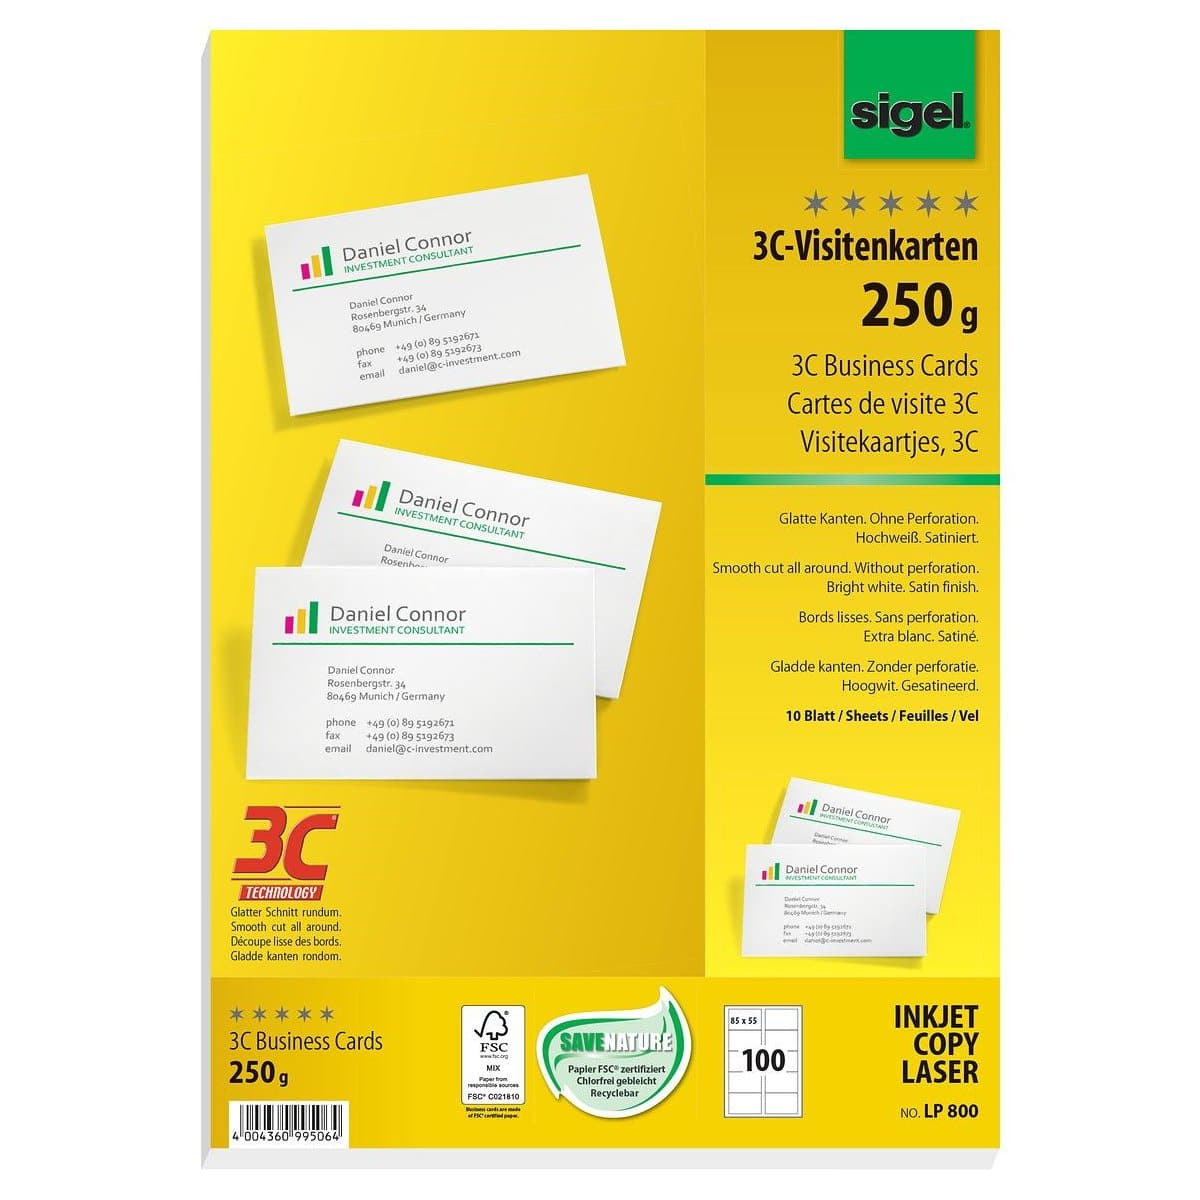 Sigel Business Cards for Ink/Laser/Copy, 3C, 85x55 mm, 250gsm, 100/pack, White